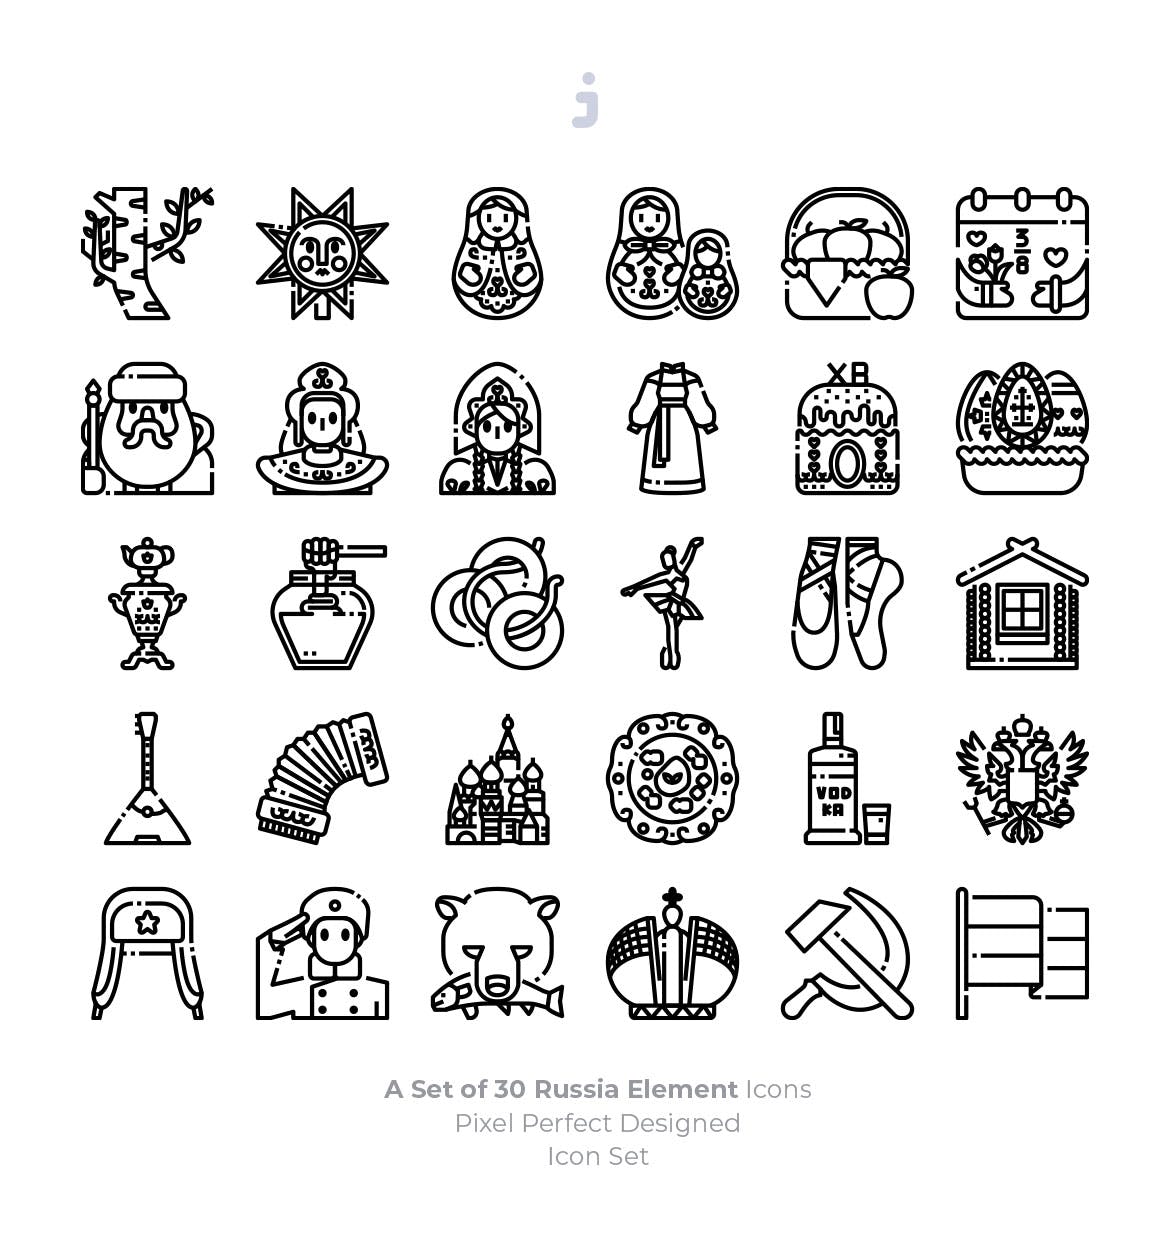 30枚彩色俄罗斯民族元素矢量蚂蚁素材精选图标 30 Russia Element Icons插图(2)